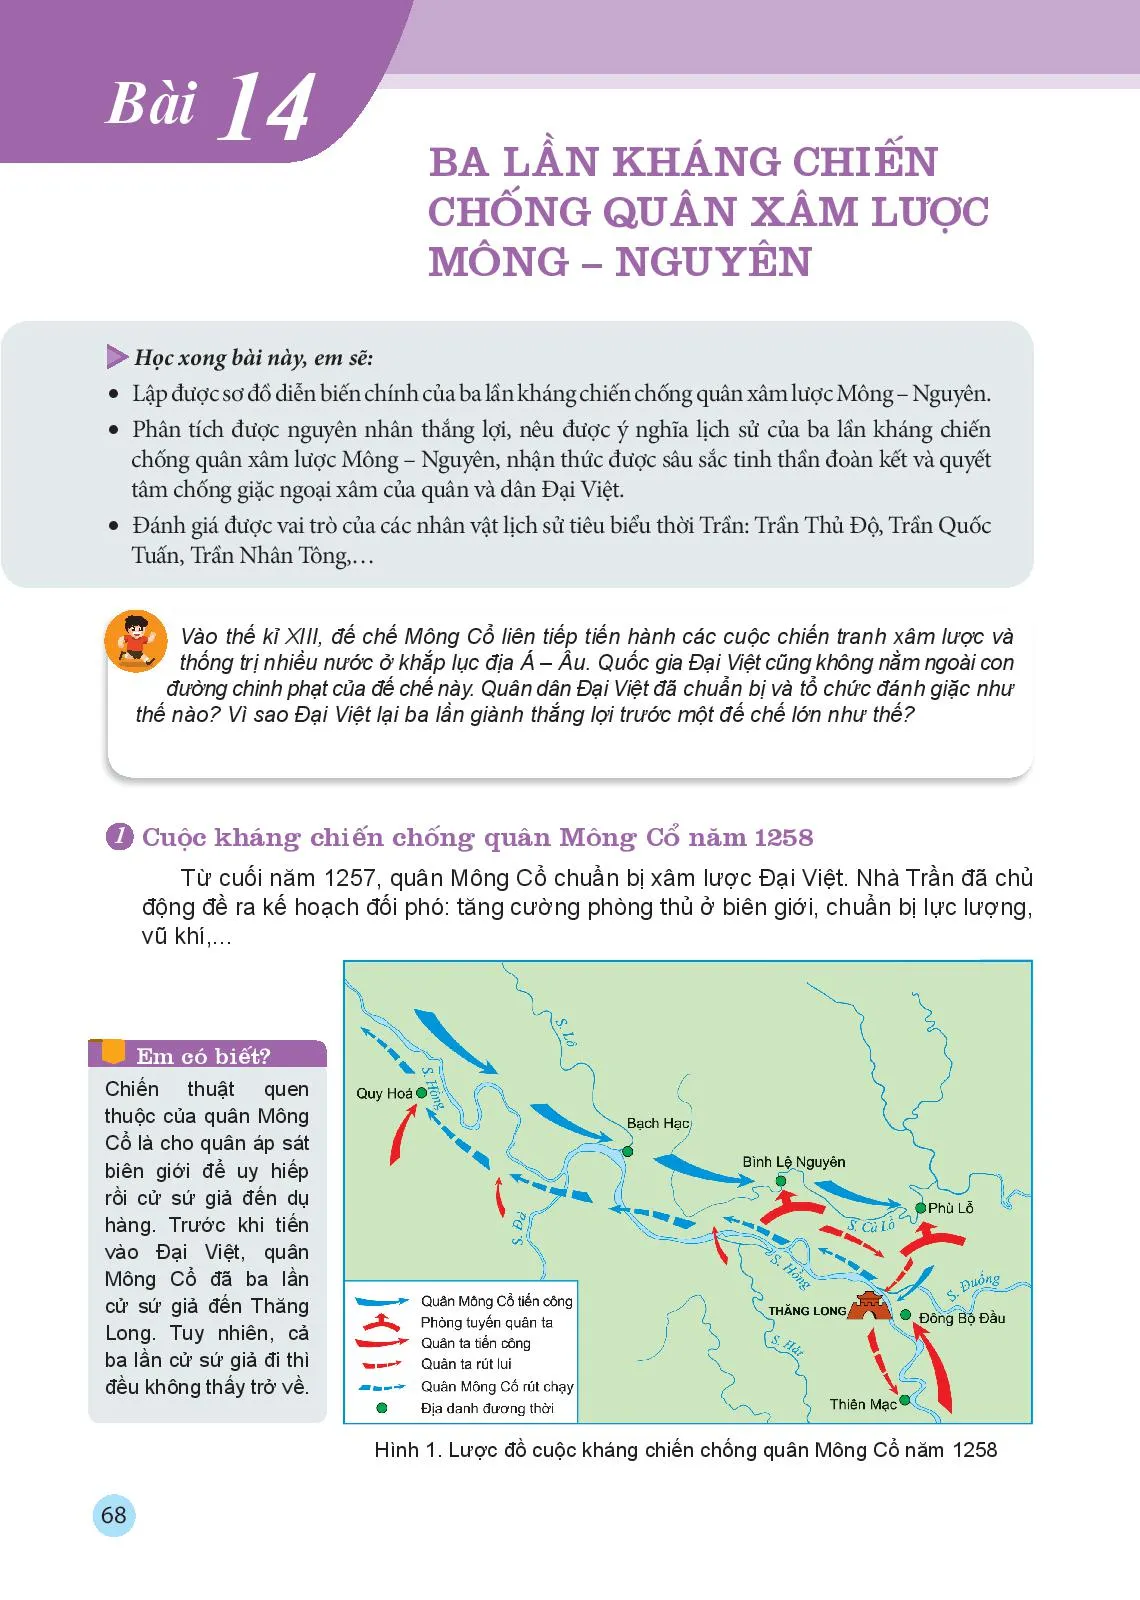 Bài 13 Đại Việt thời Trần (1226-1400)